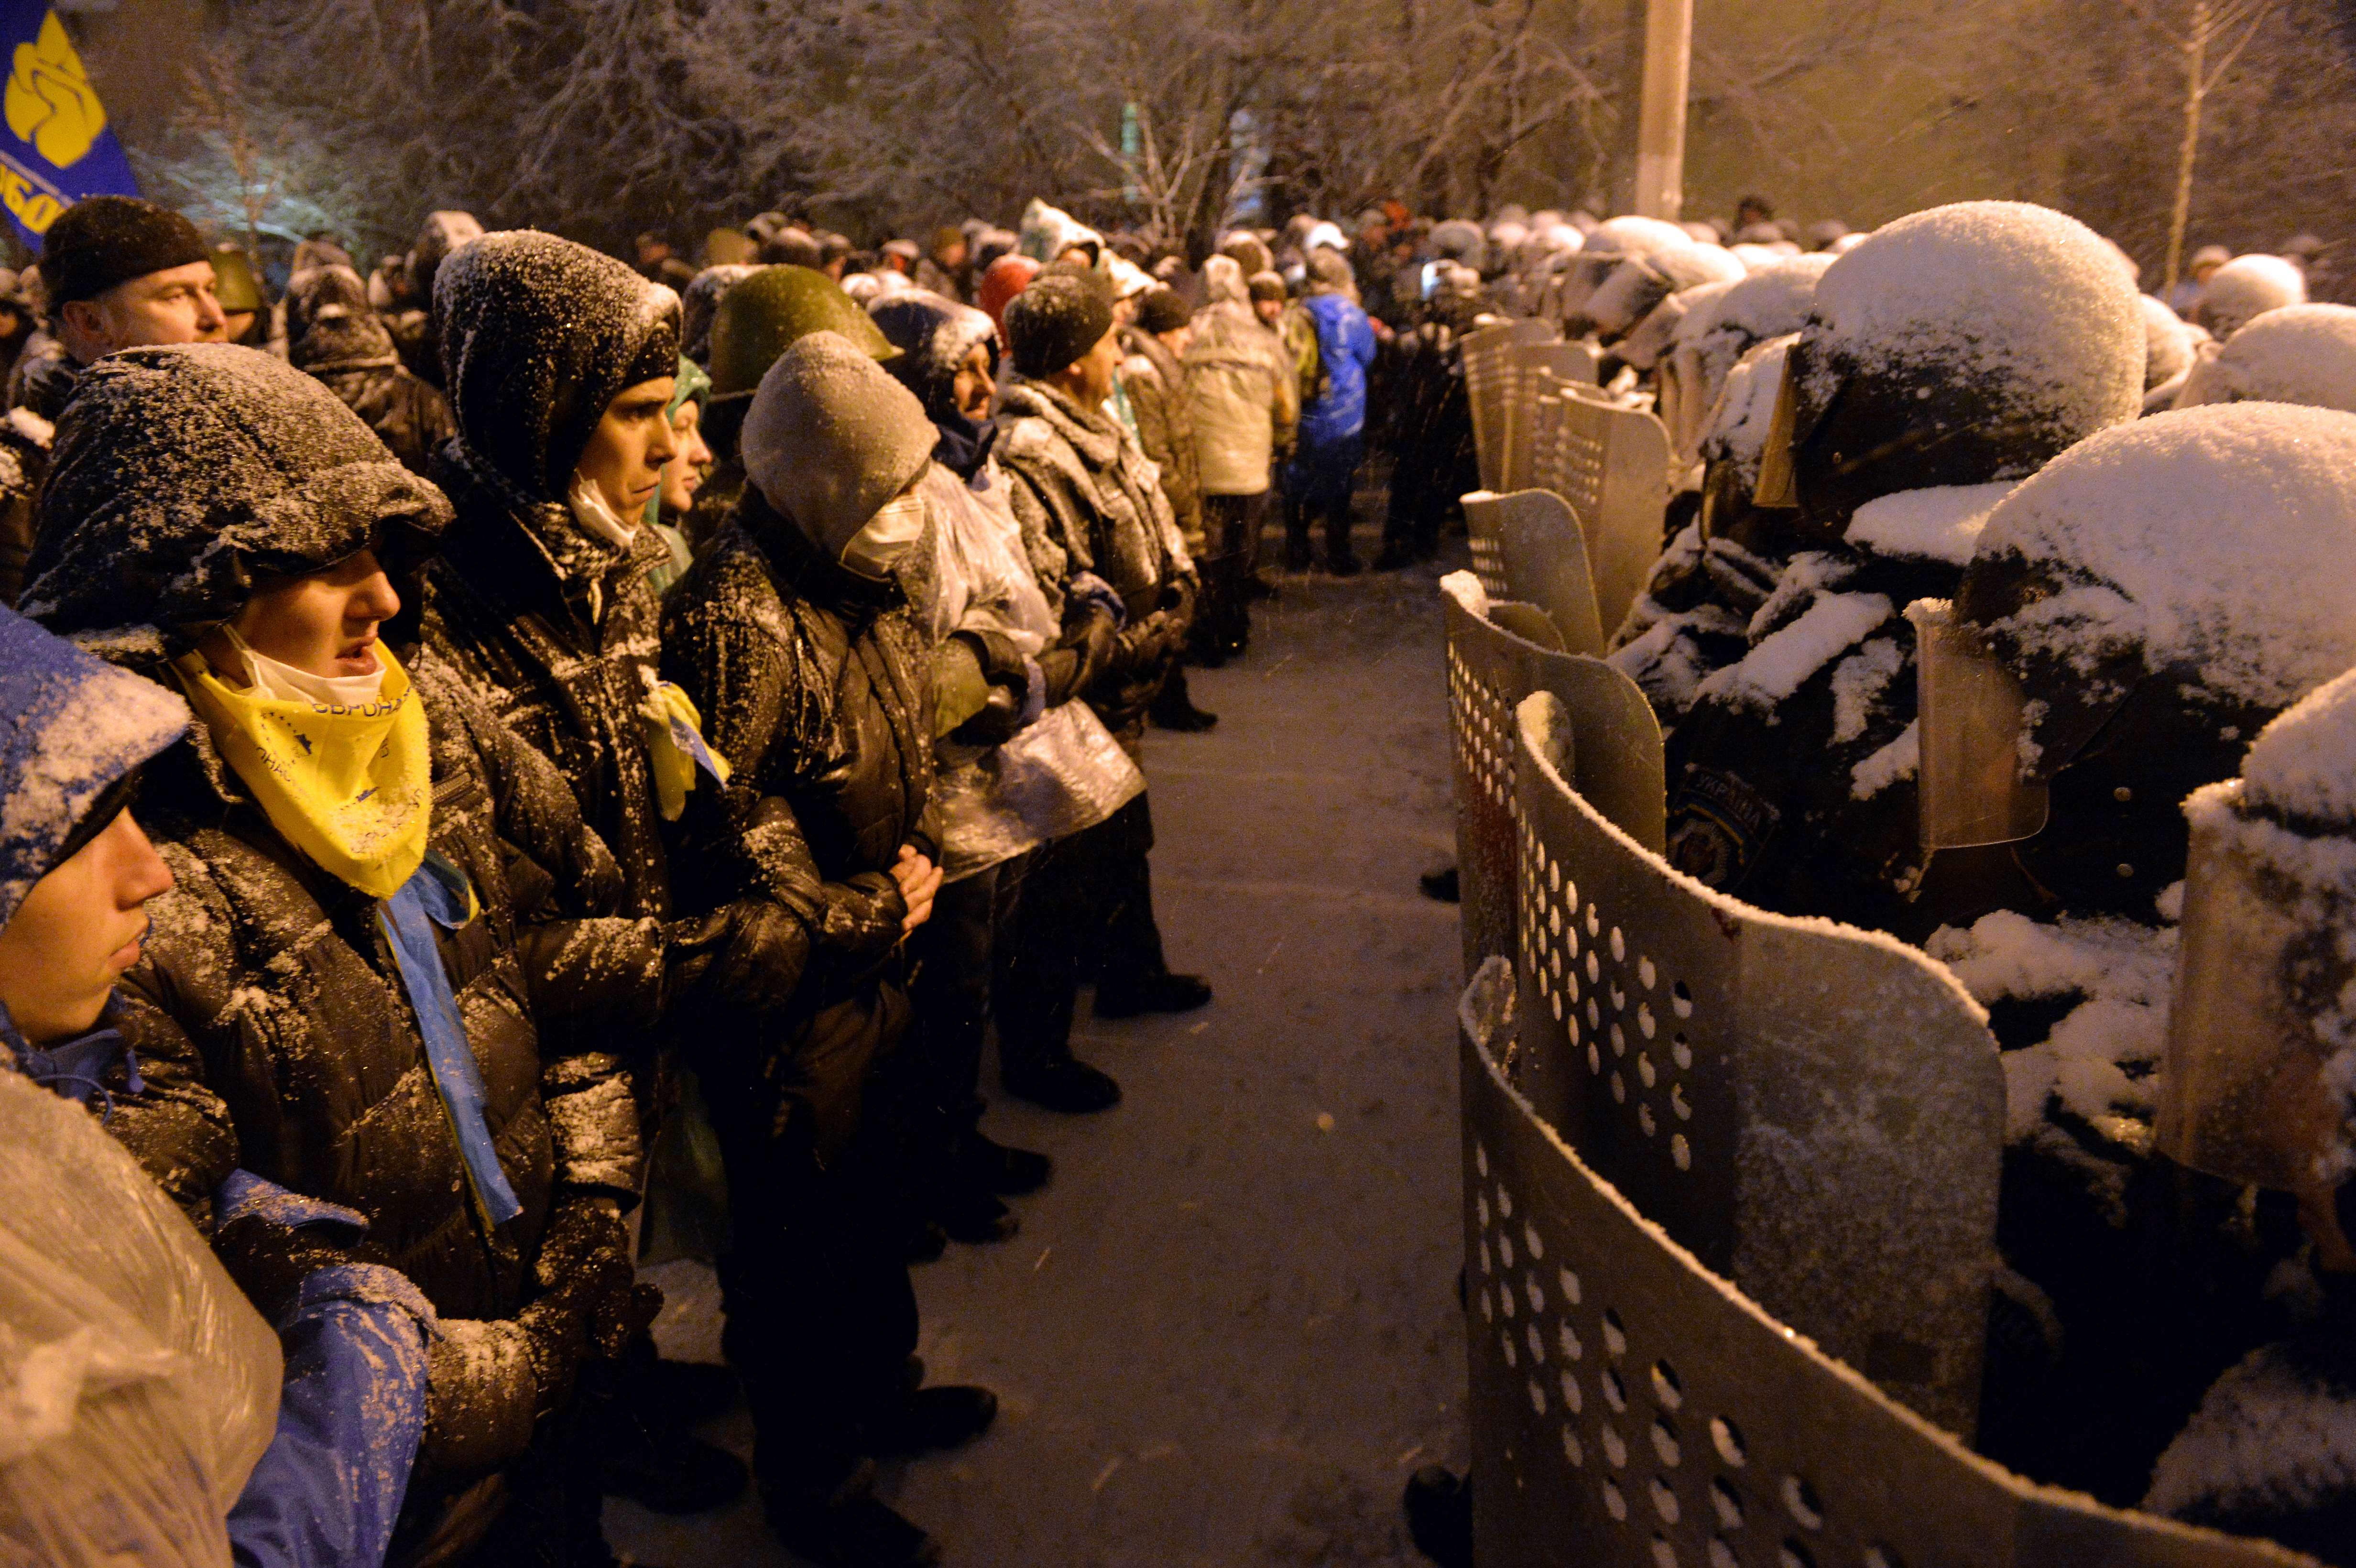 Kiev Revolution #17